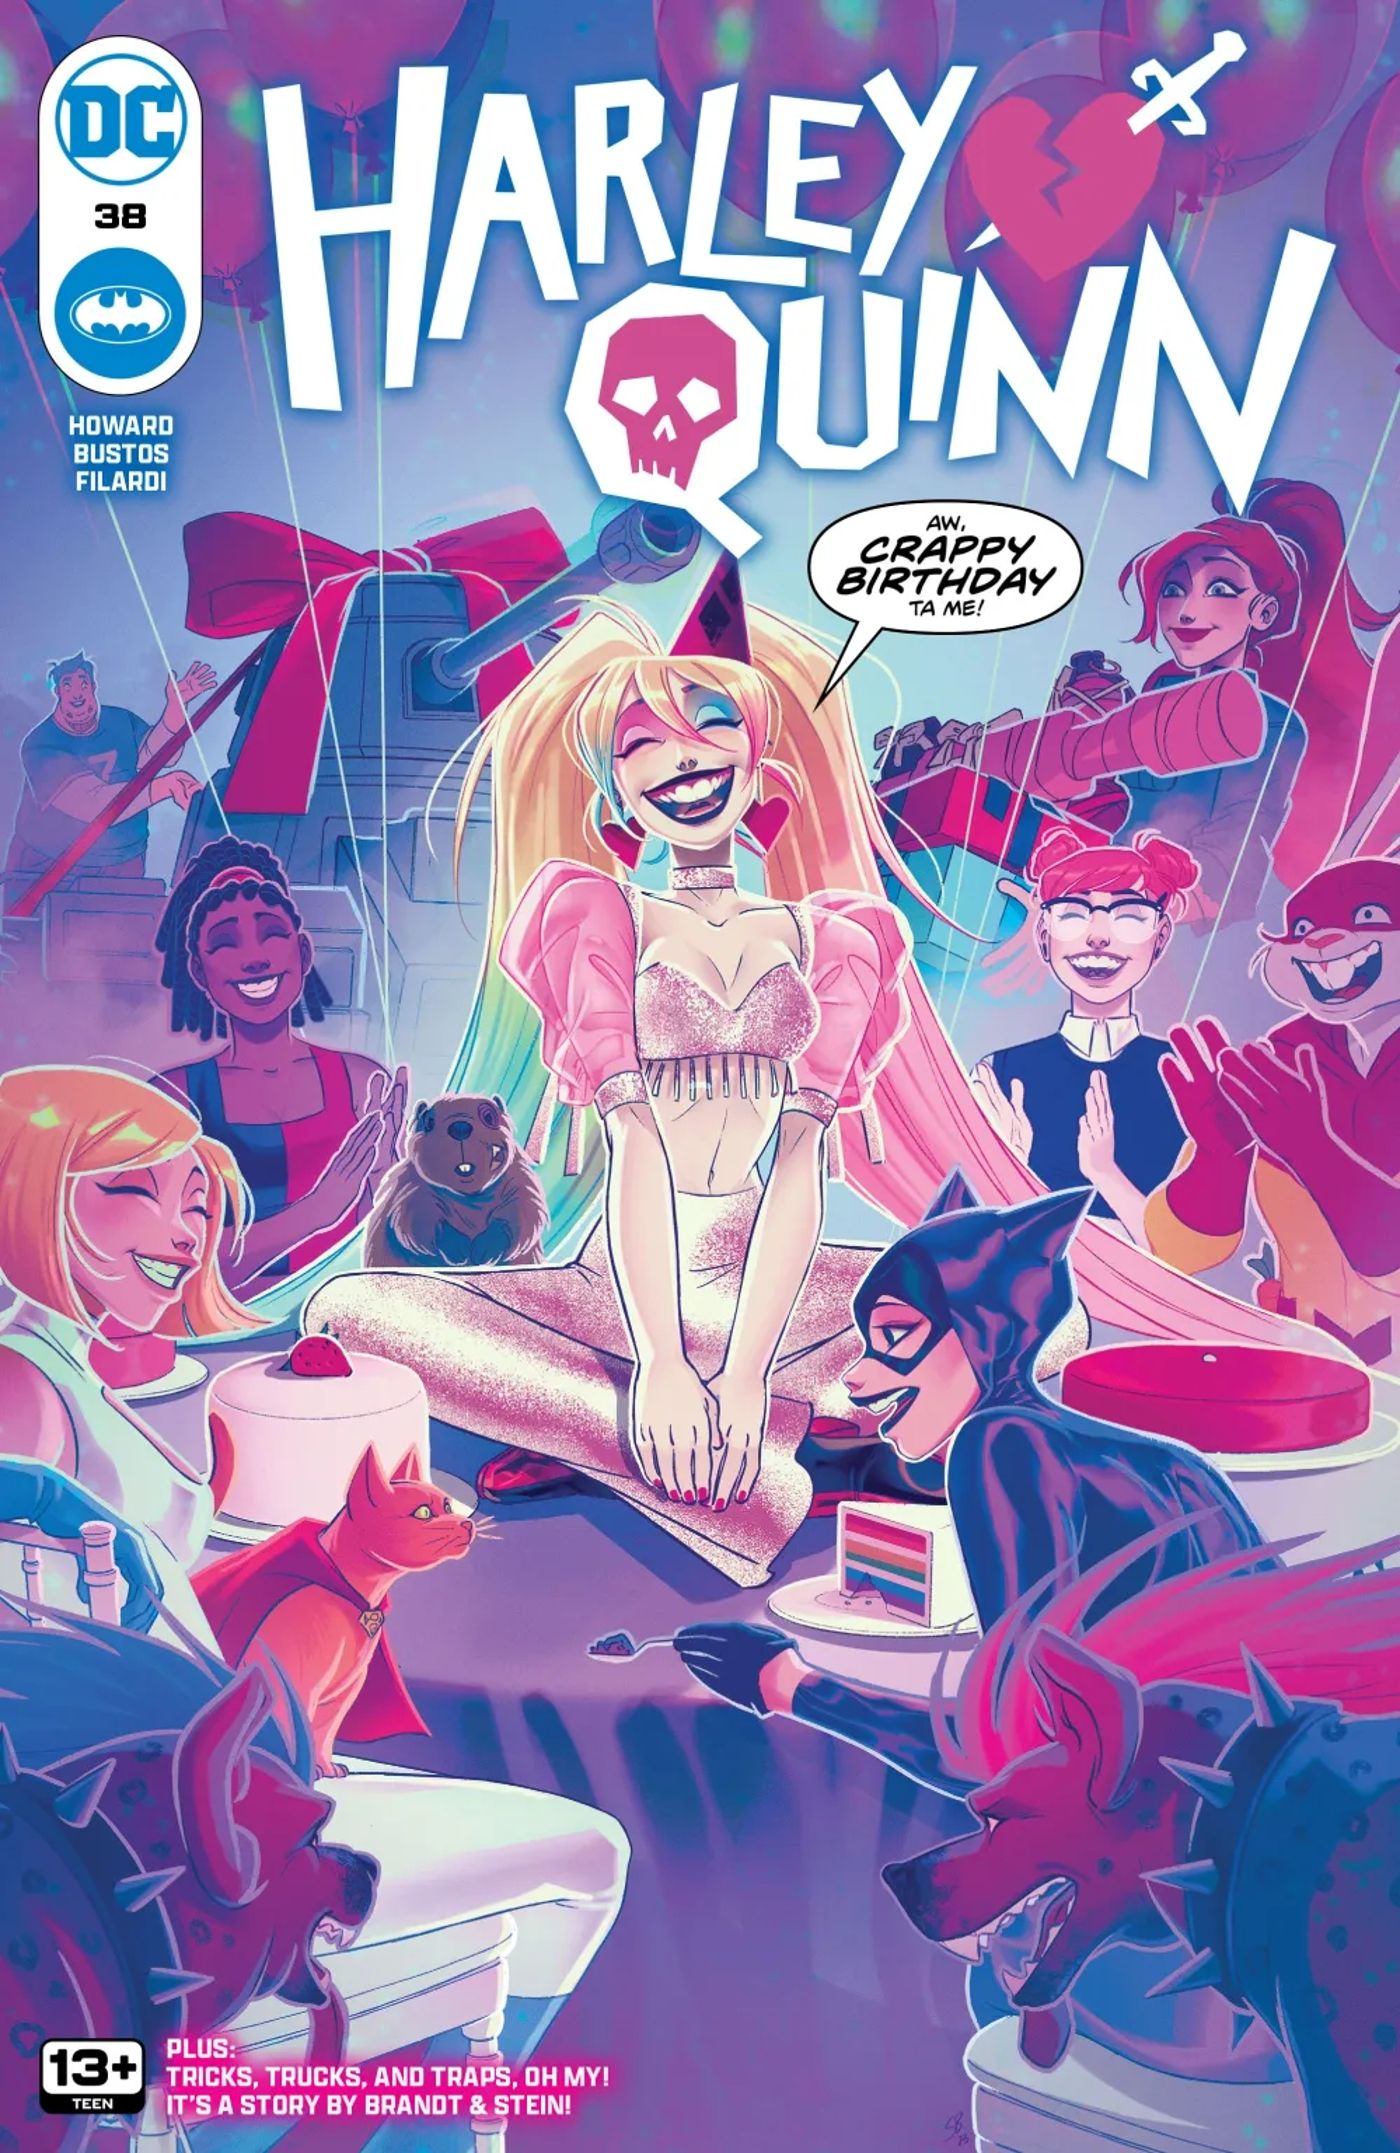 Capa principal de Harley Quinn 38: Harley, Mulher-Gato, Poderosa e outras pessoas em uma festa de aniversário.